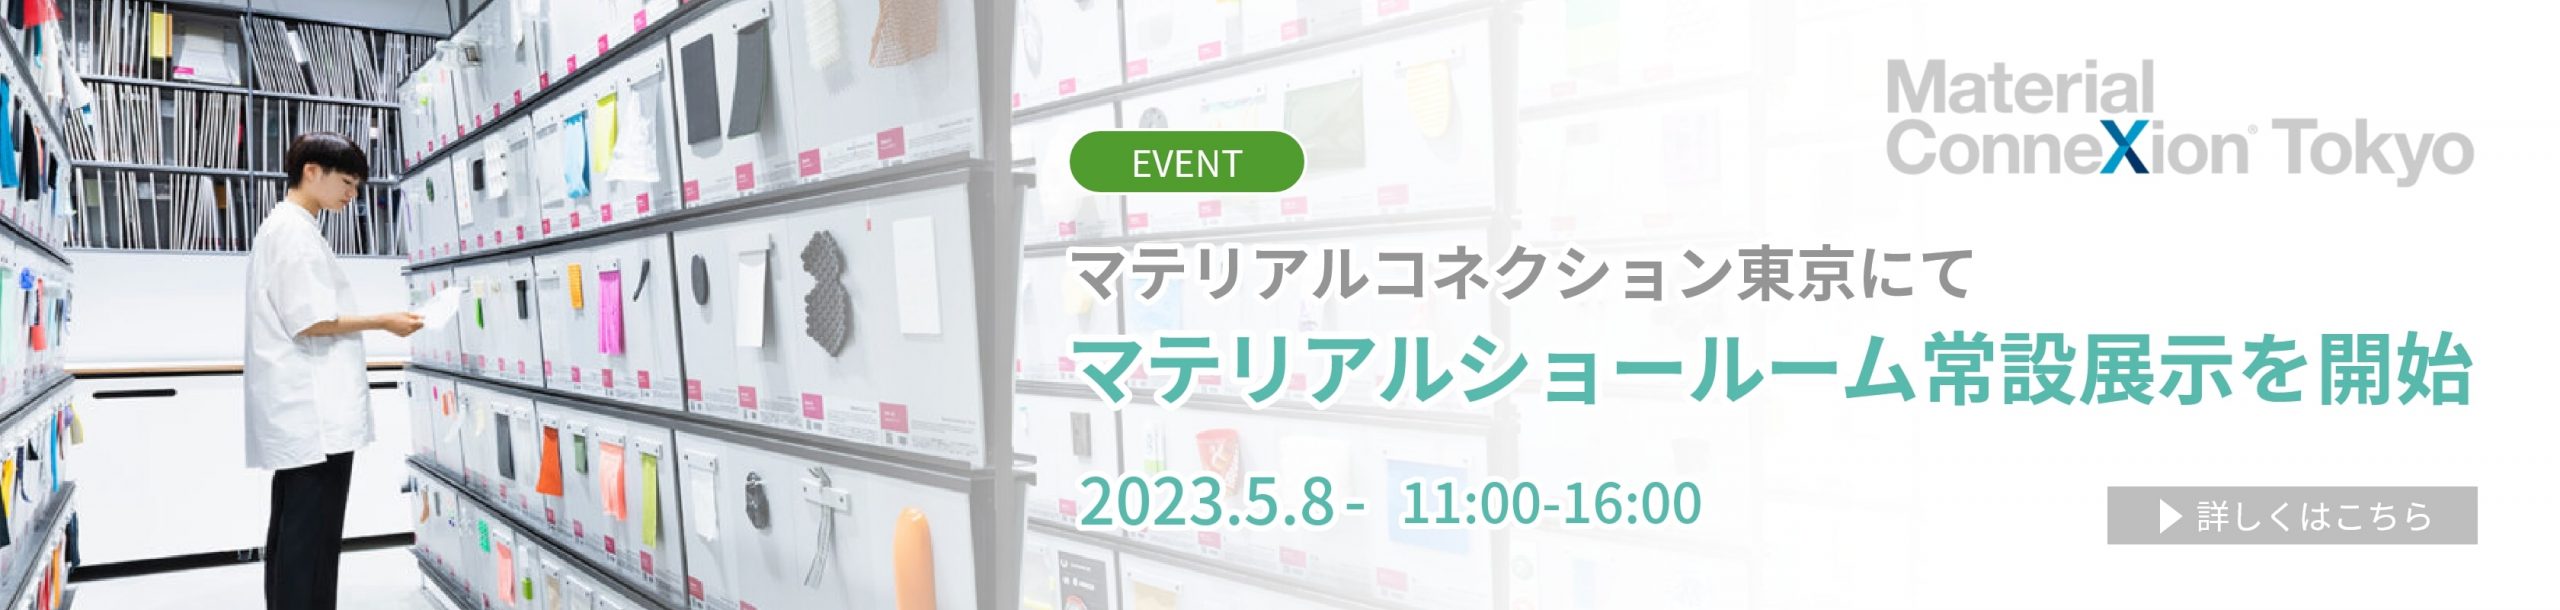 マテリアルコネクション東京にてマテリアルショールーム常設展示を開始